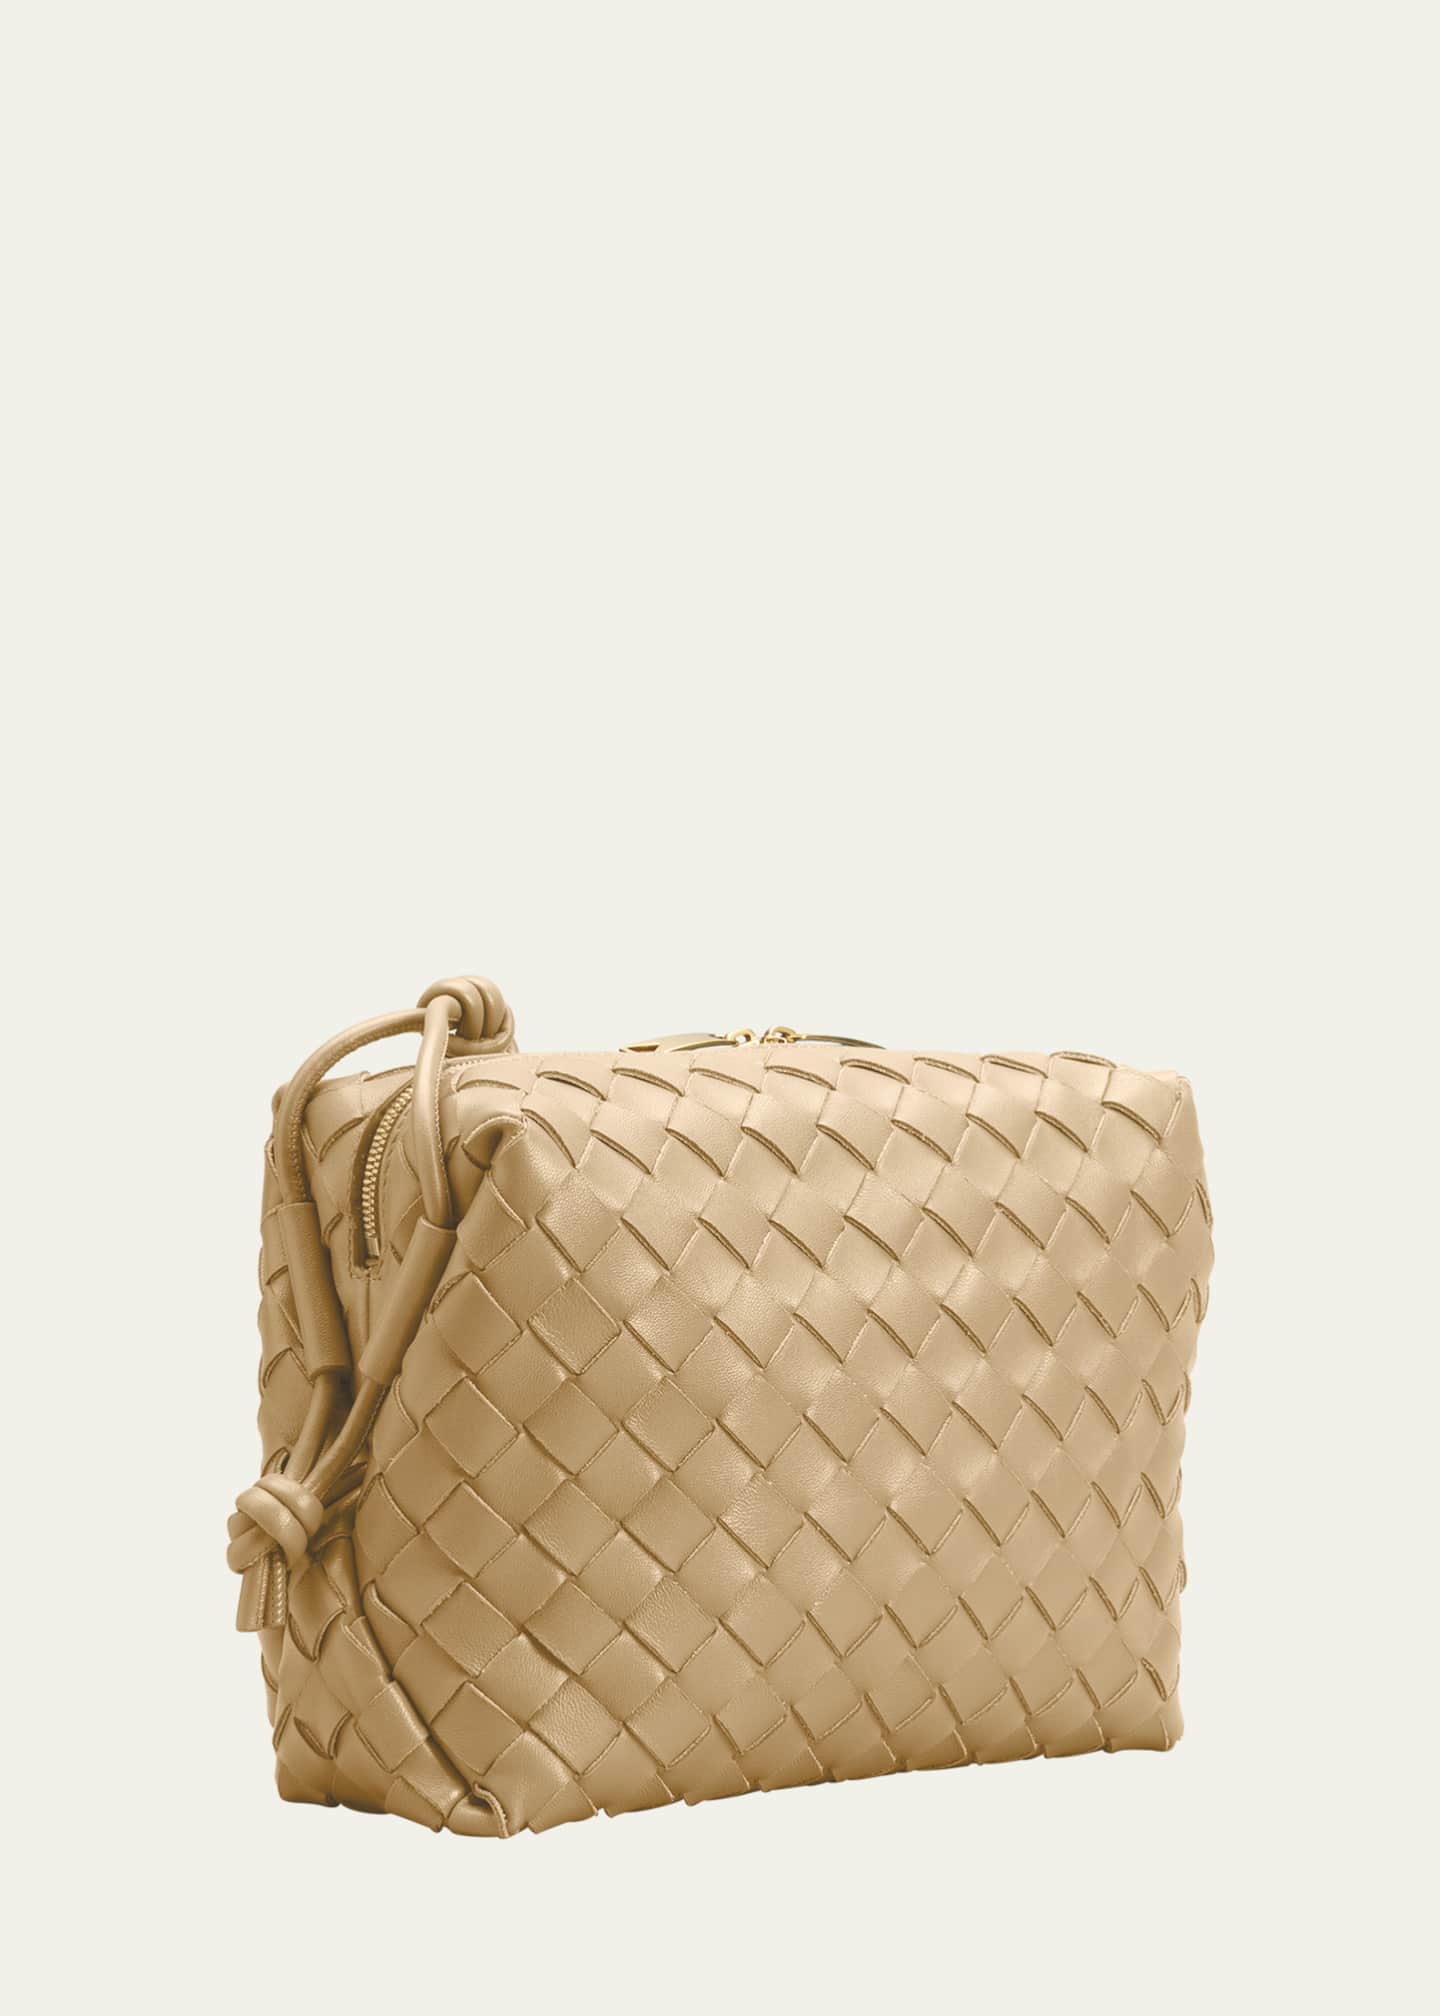 Bottega Veneta Mini Loop Intrecciato Leather Bag In Almond